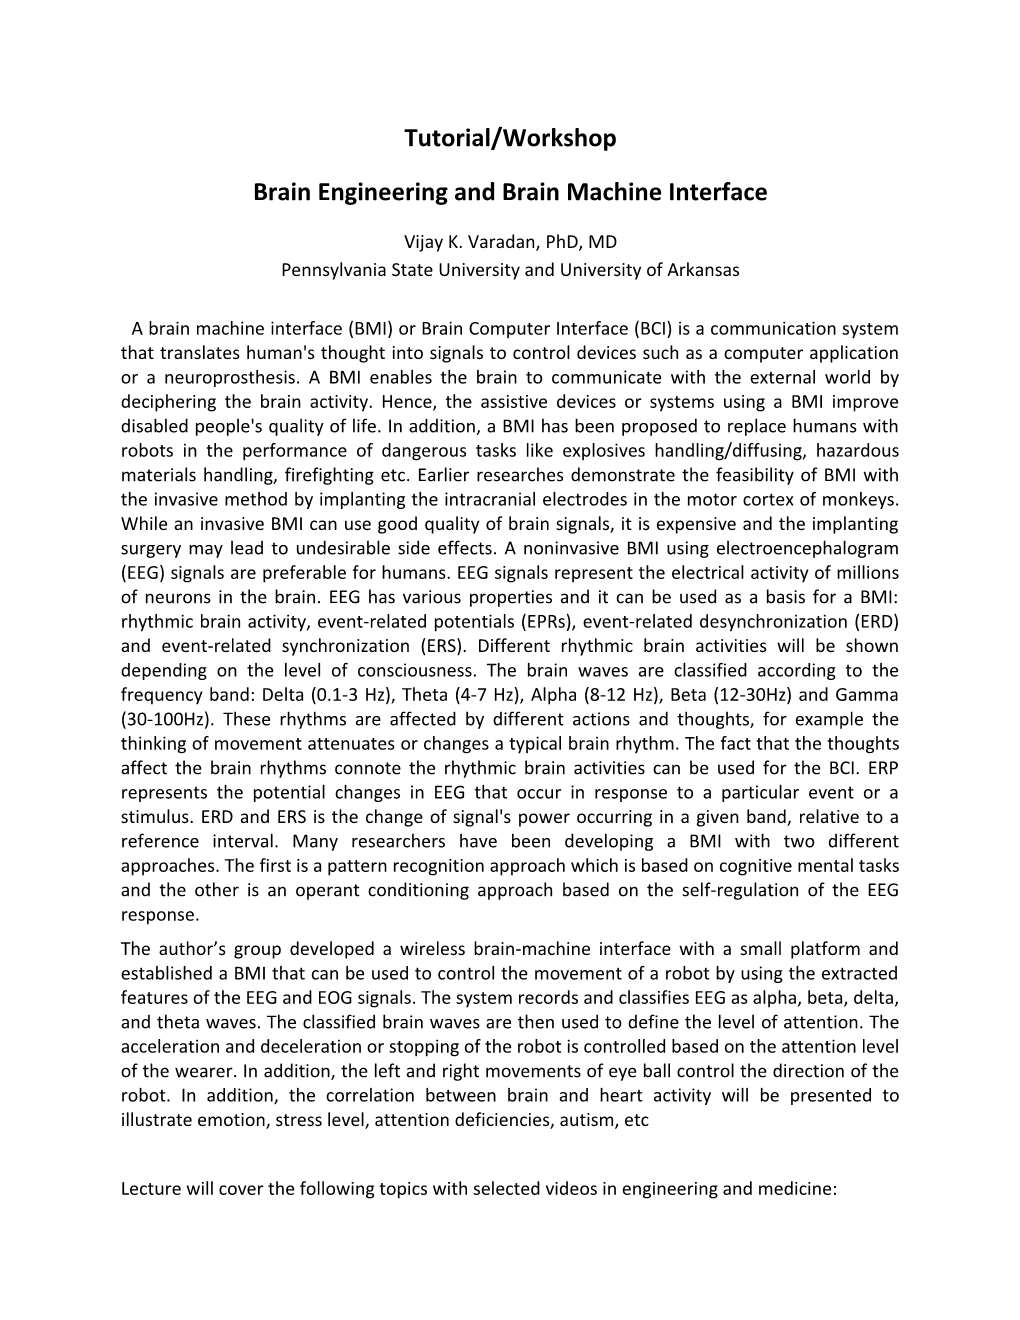 Brain Engineering and Brain Machine Interface